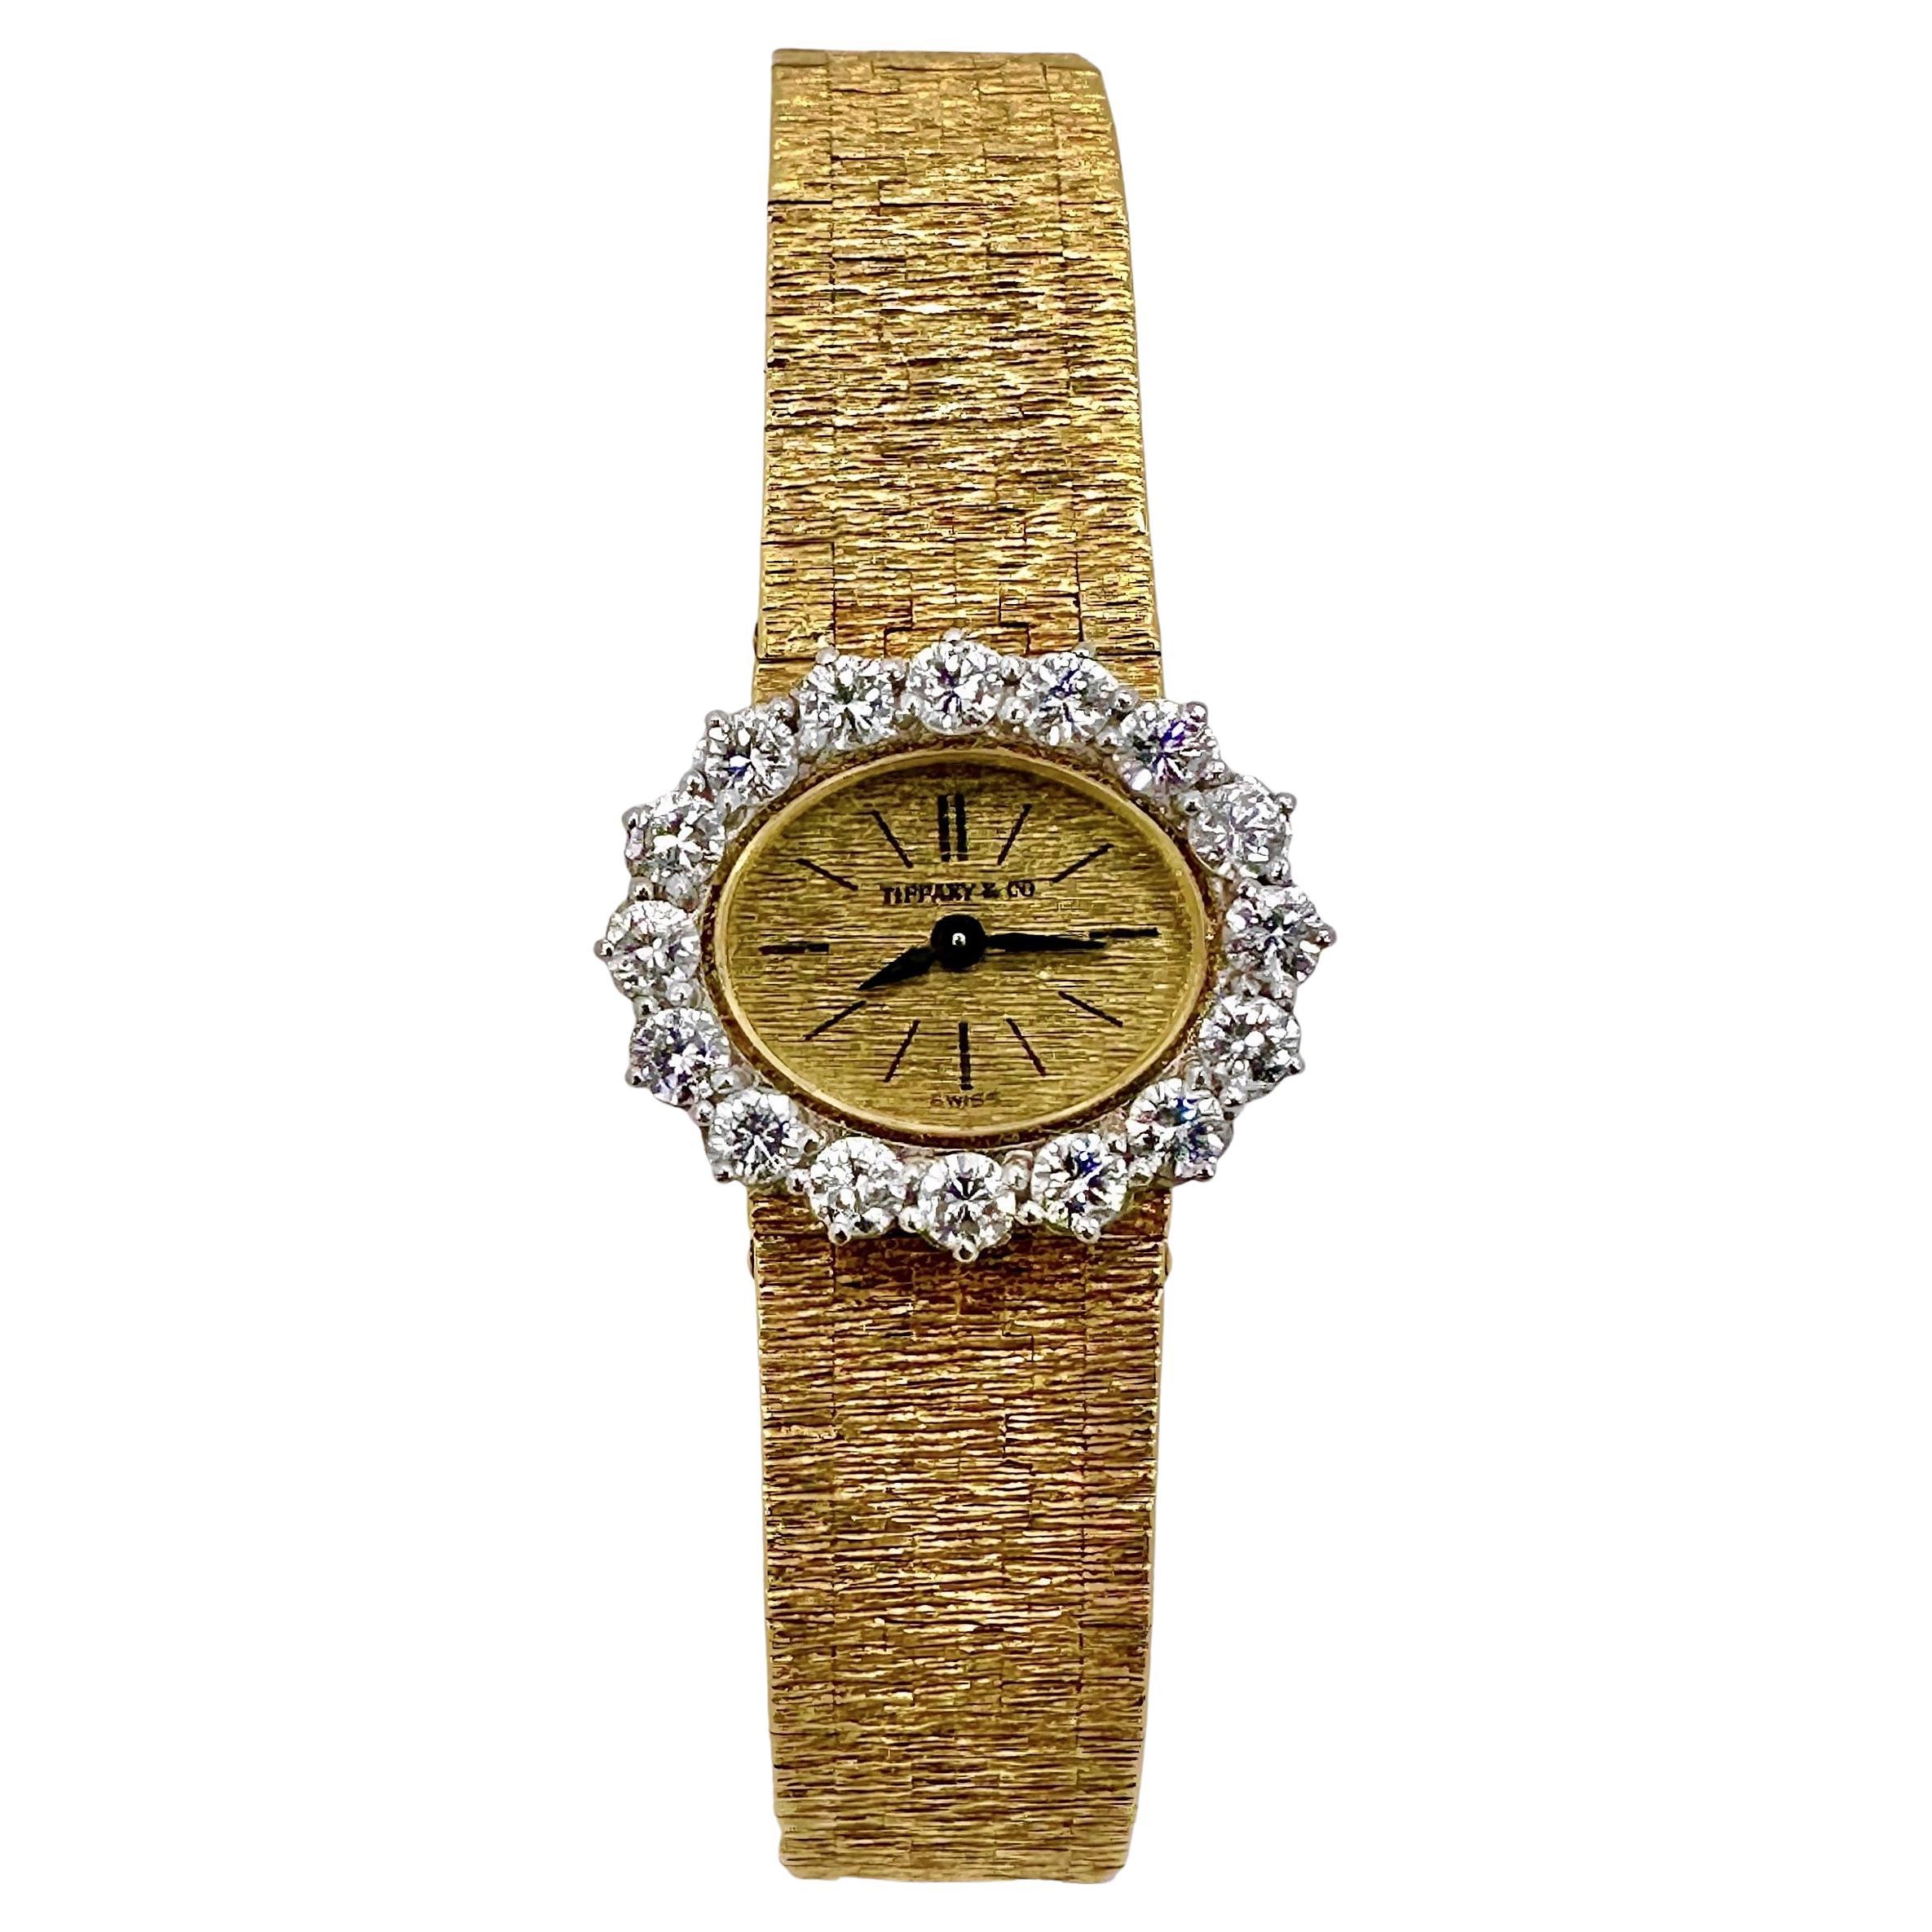 Montre-bracelet vintage Tiffany & Co pour femme en or 18 carats avec lunette en diamants par Piaget